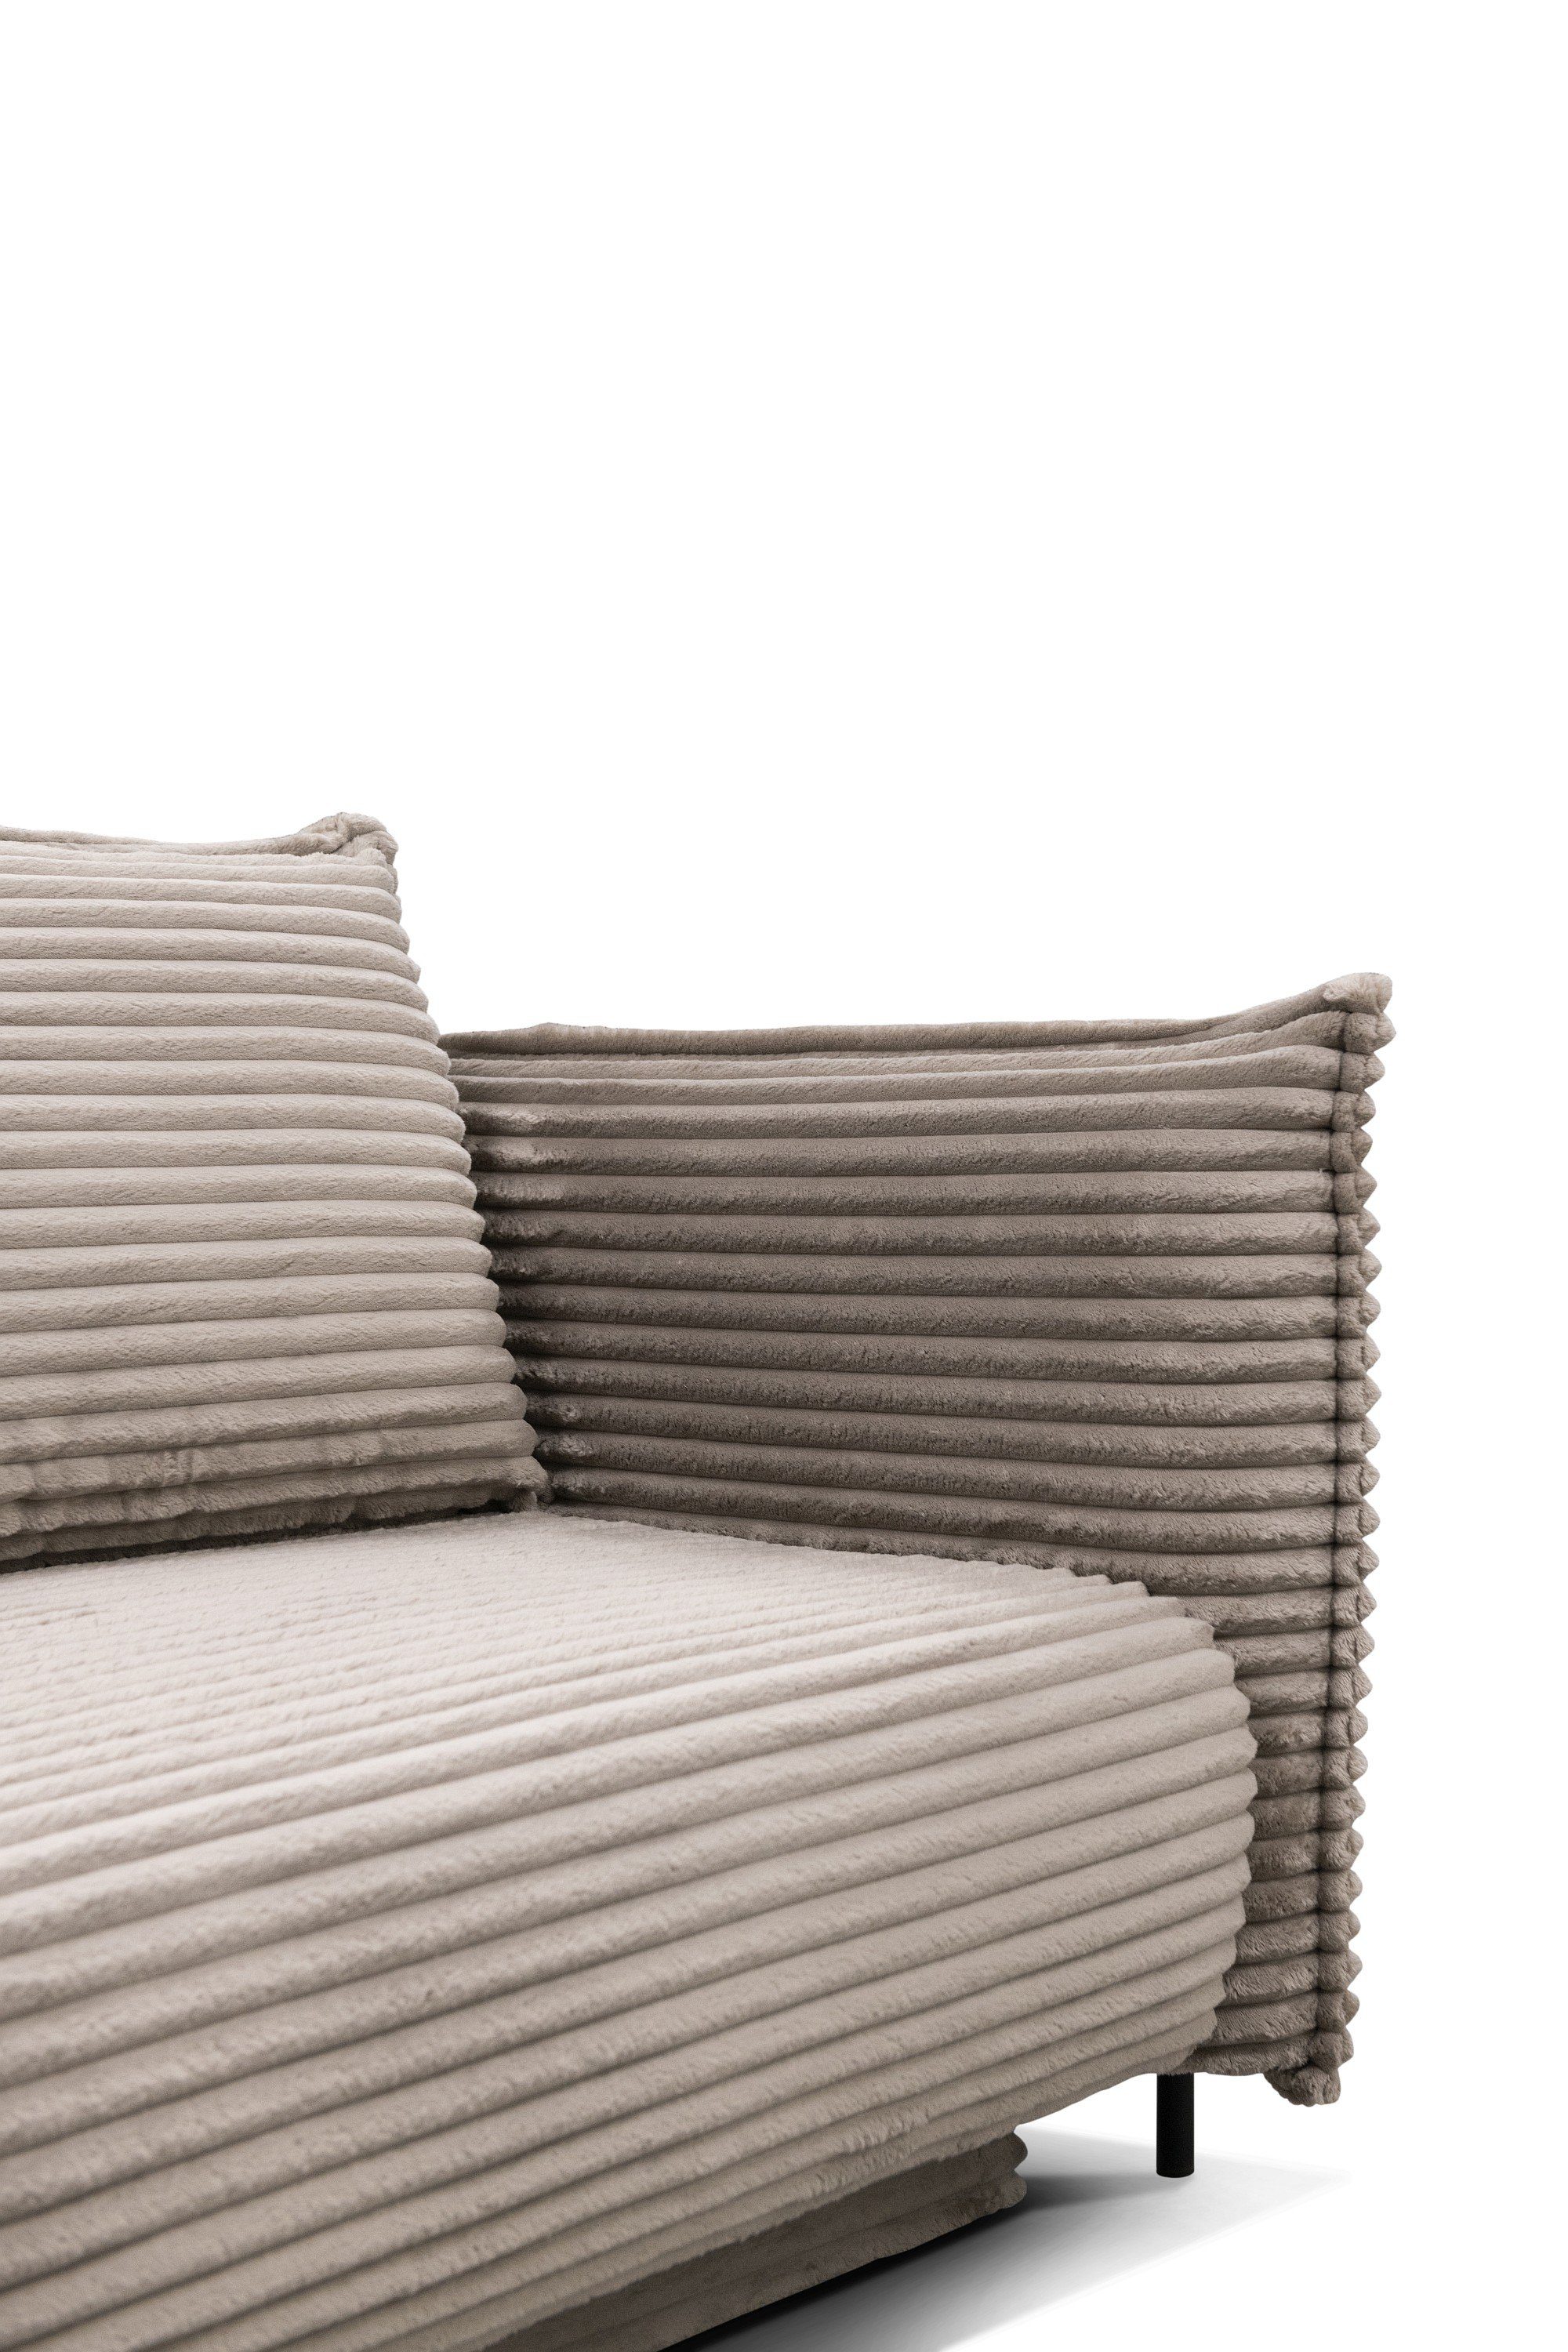 Sofa Cord mega-3-taupe Bettkasten Bettsofa sowie für bezogen Möbel mit und Cordbezug Amalfi Dich mit Farbauswahl,